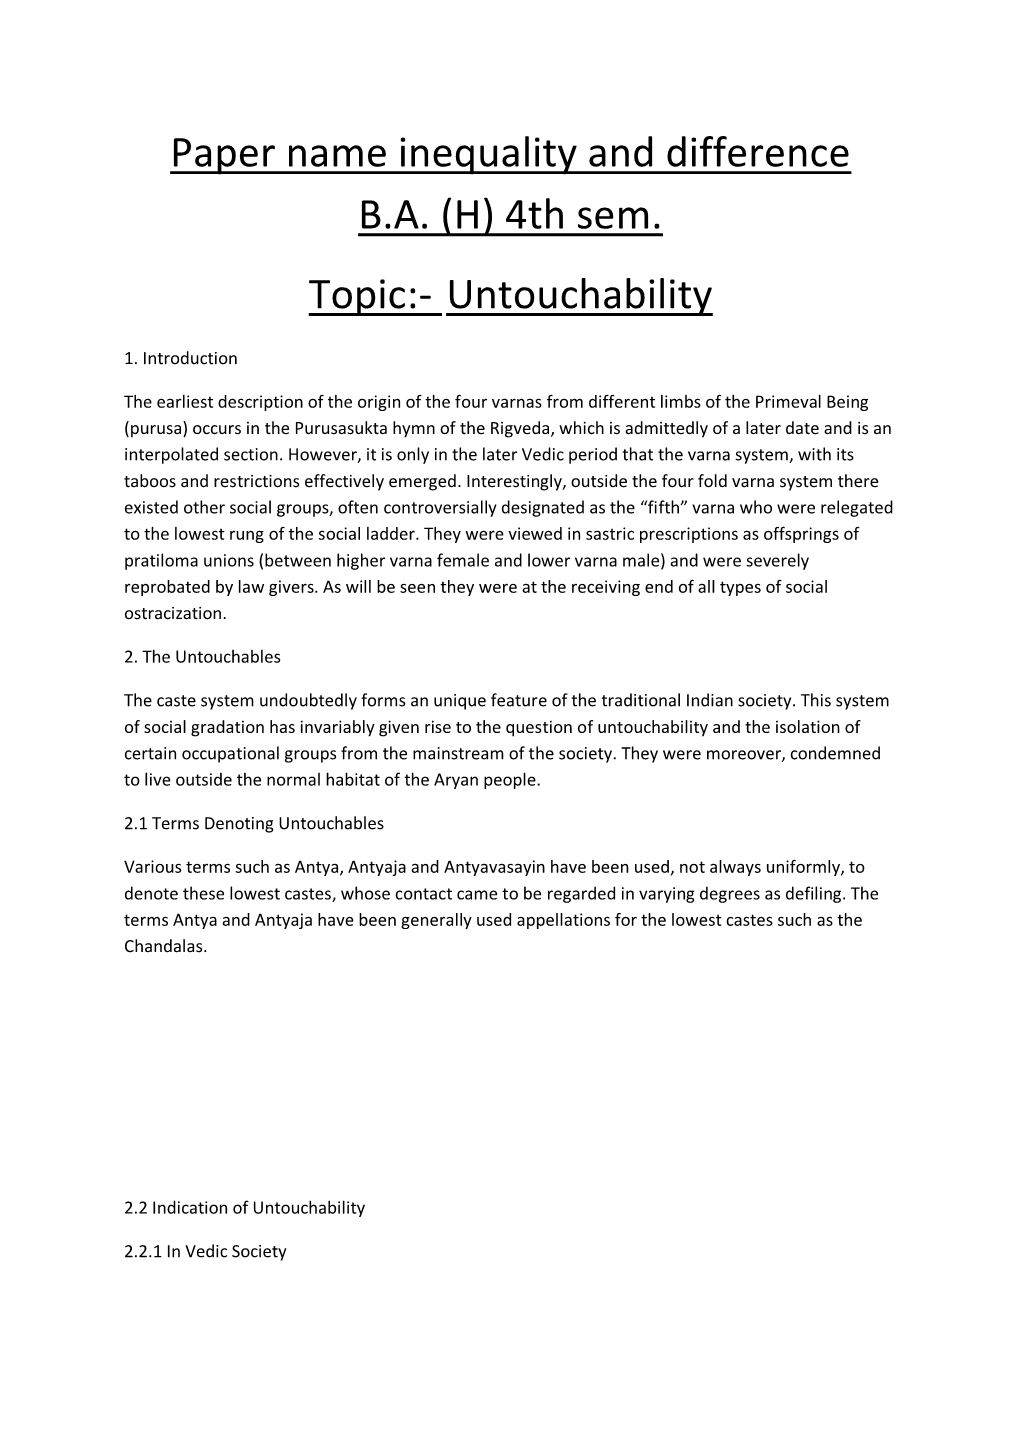 Untouchability